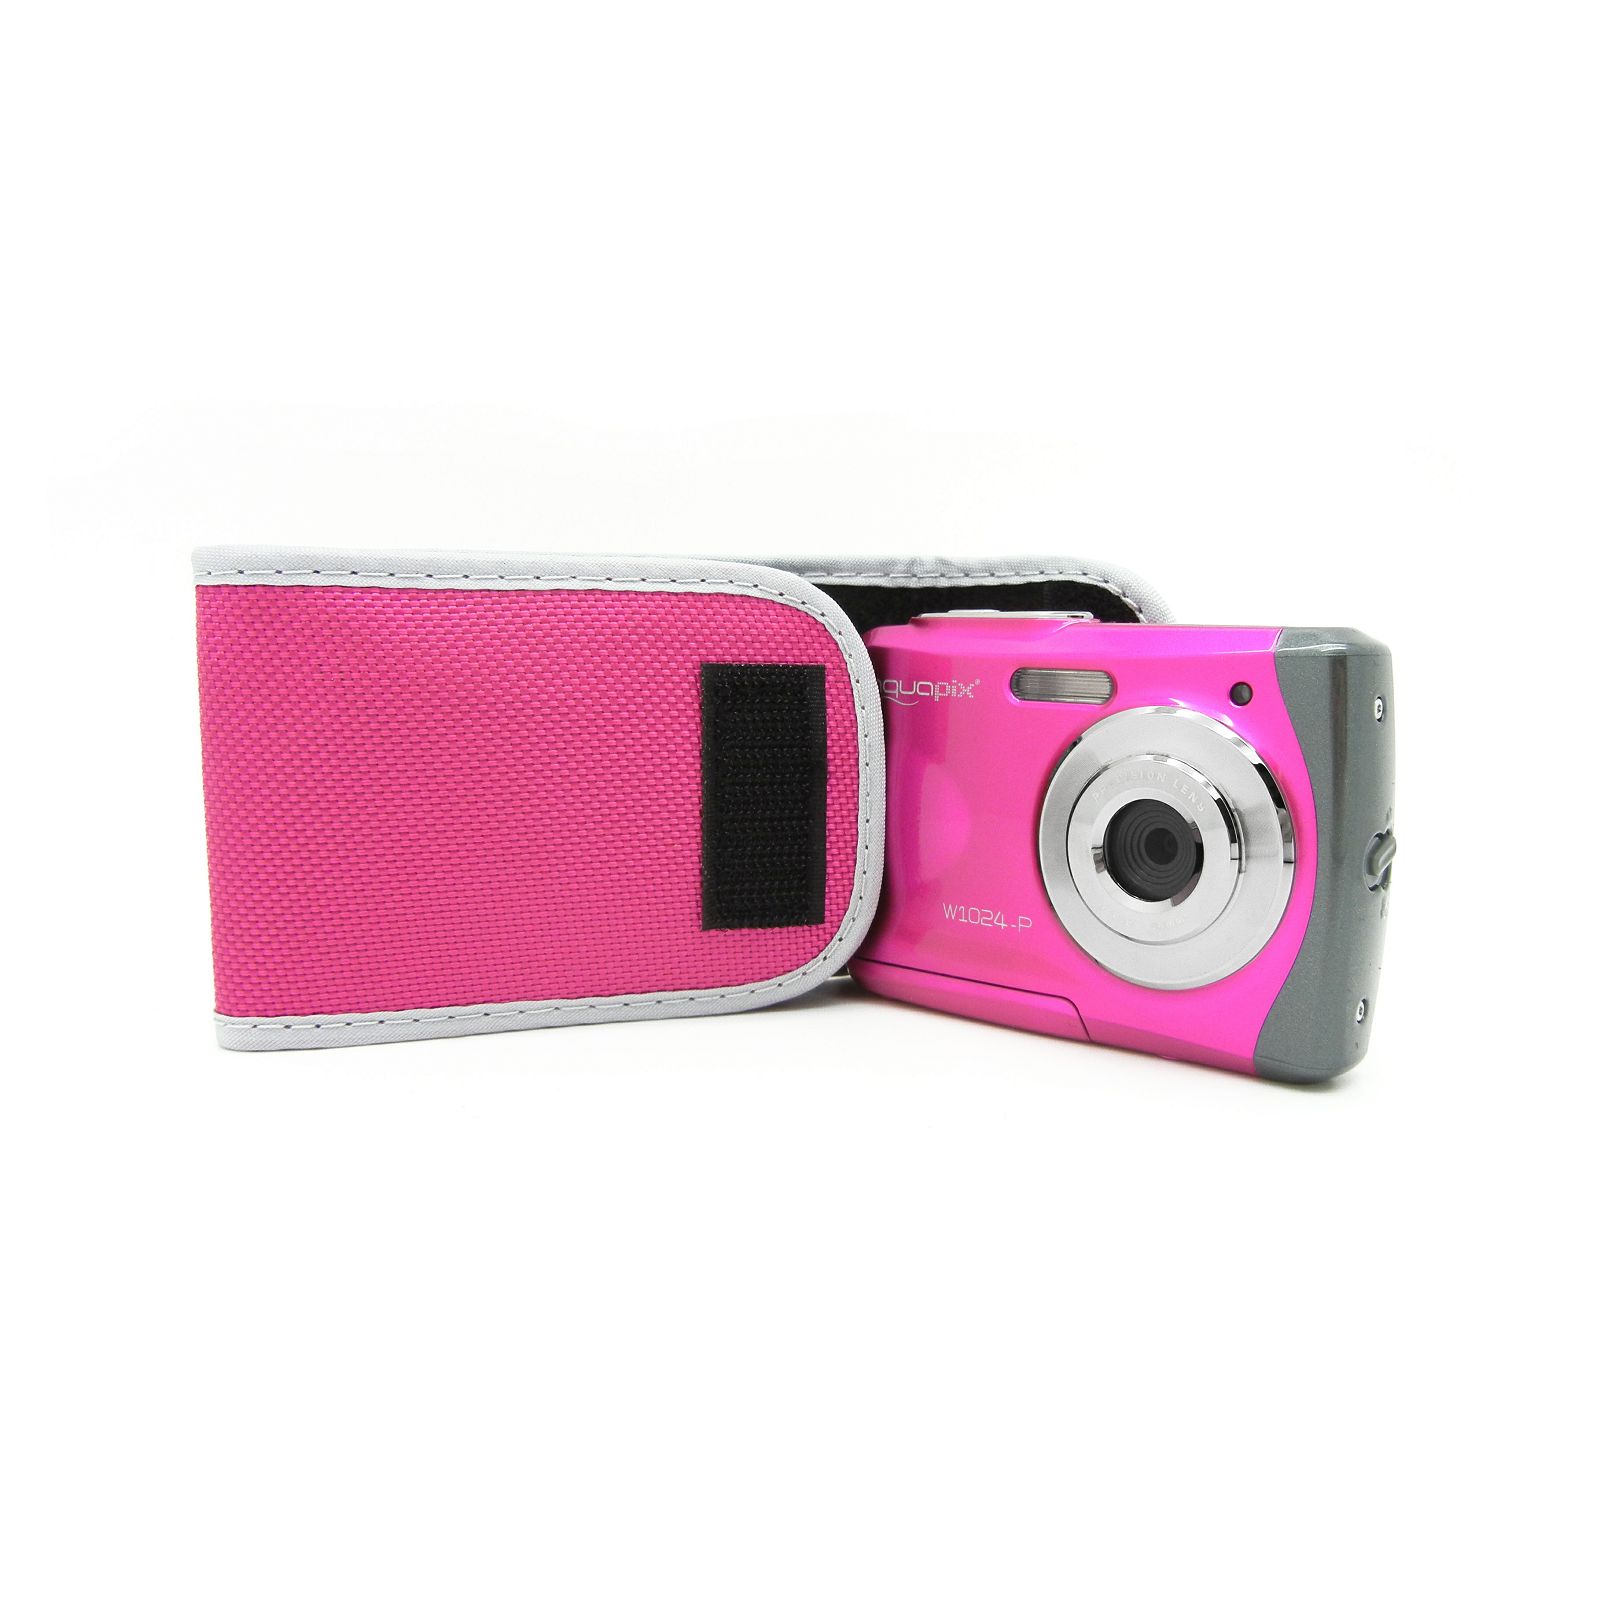 Aquapix W1024-P "Splash" Pink (10013) 10MP 4x zoom LCD podvodni vodonepropusni digitalni fotoaparat do 3m Waterproof digital camera